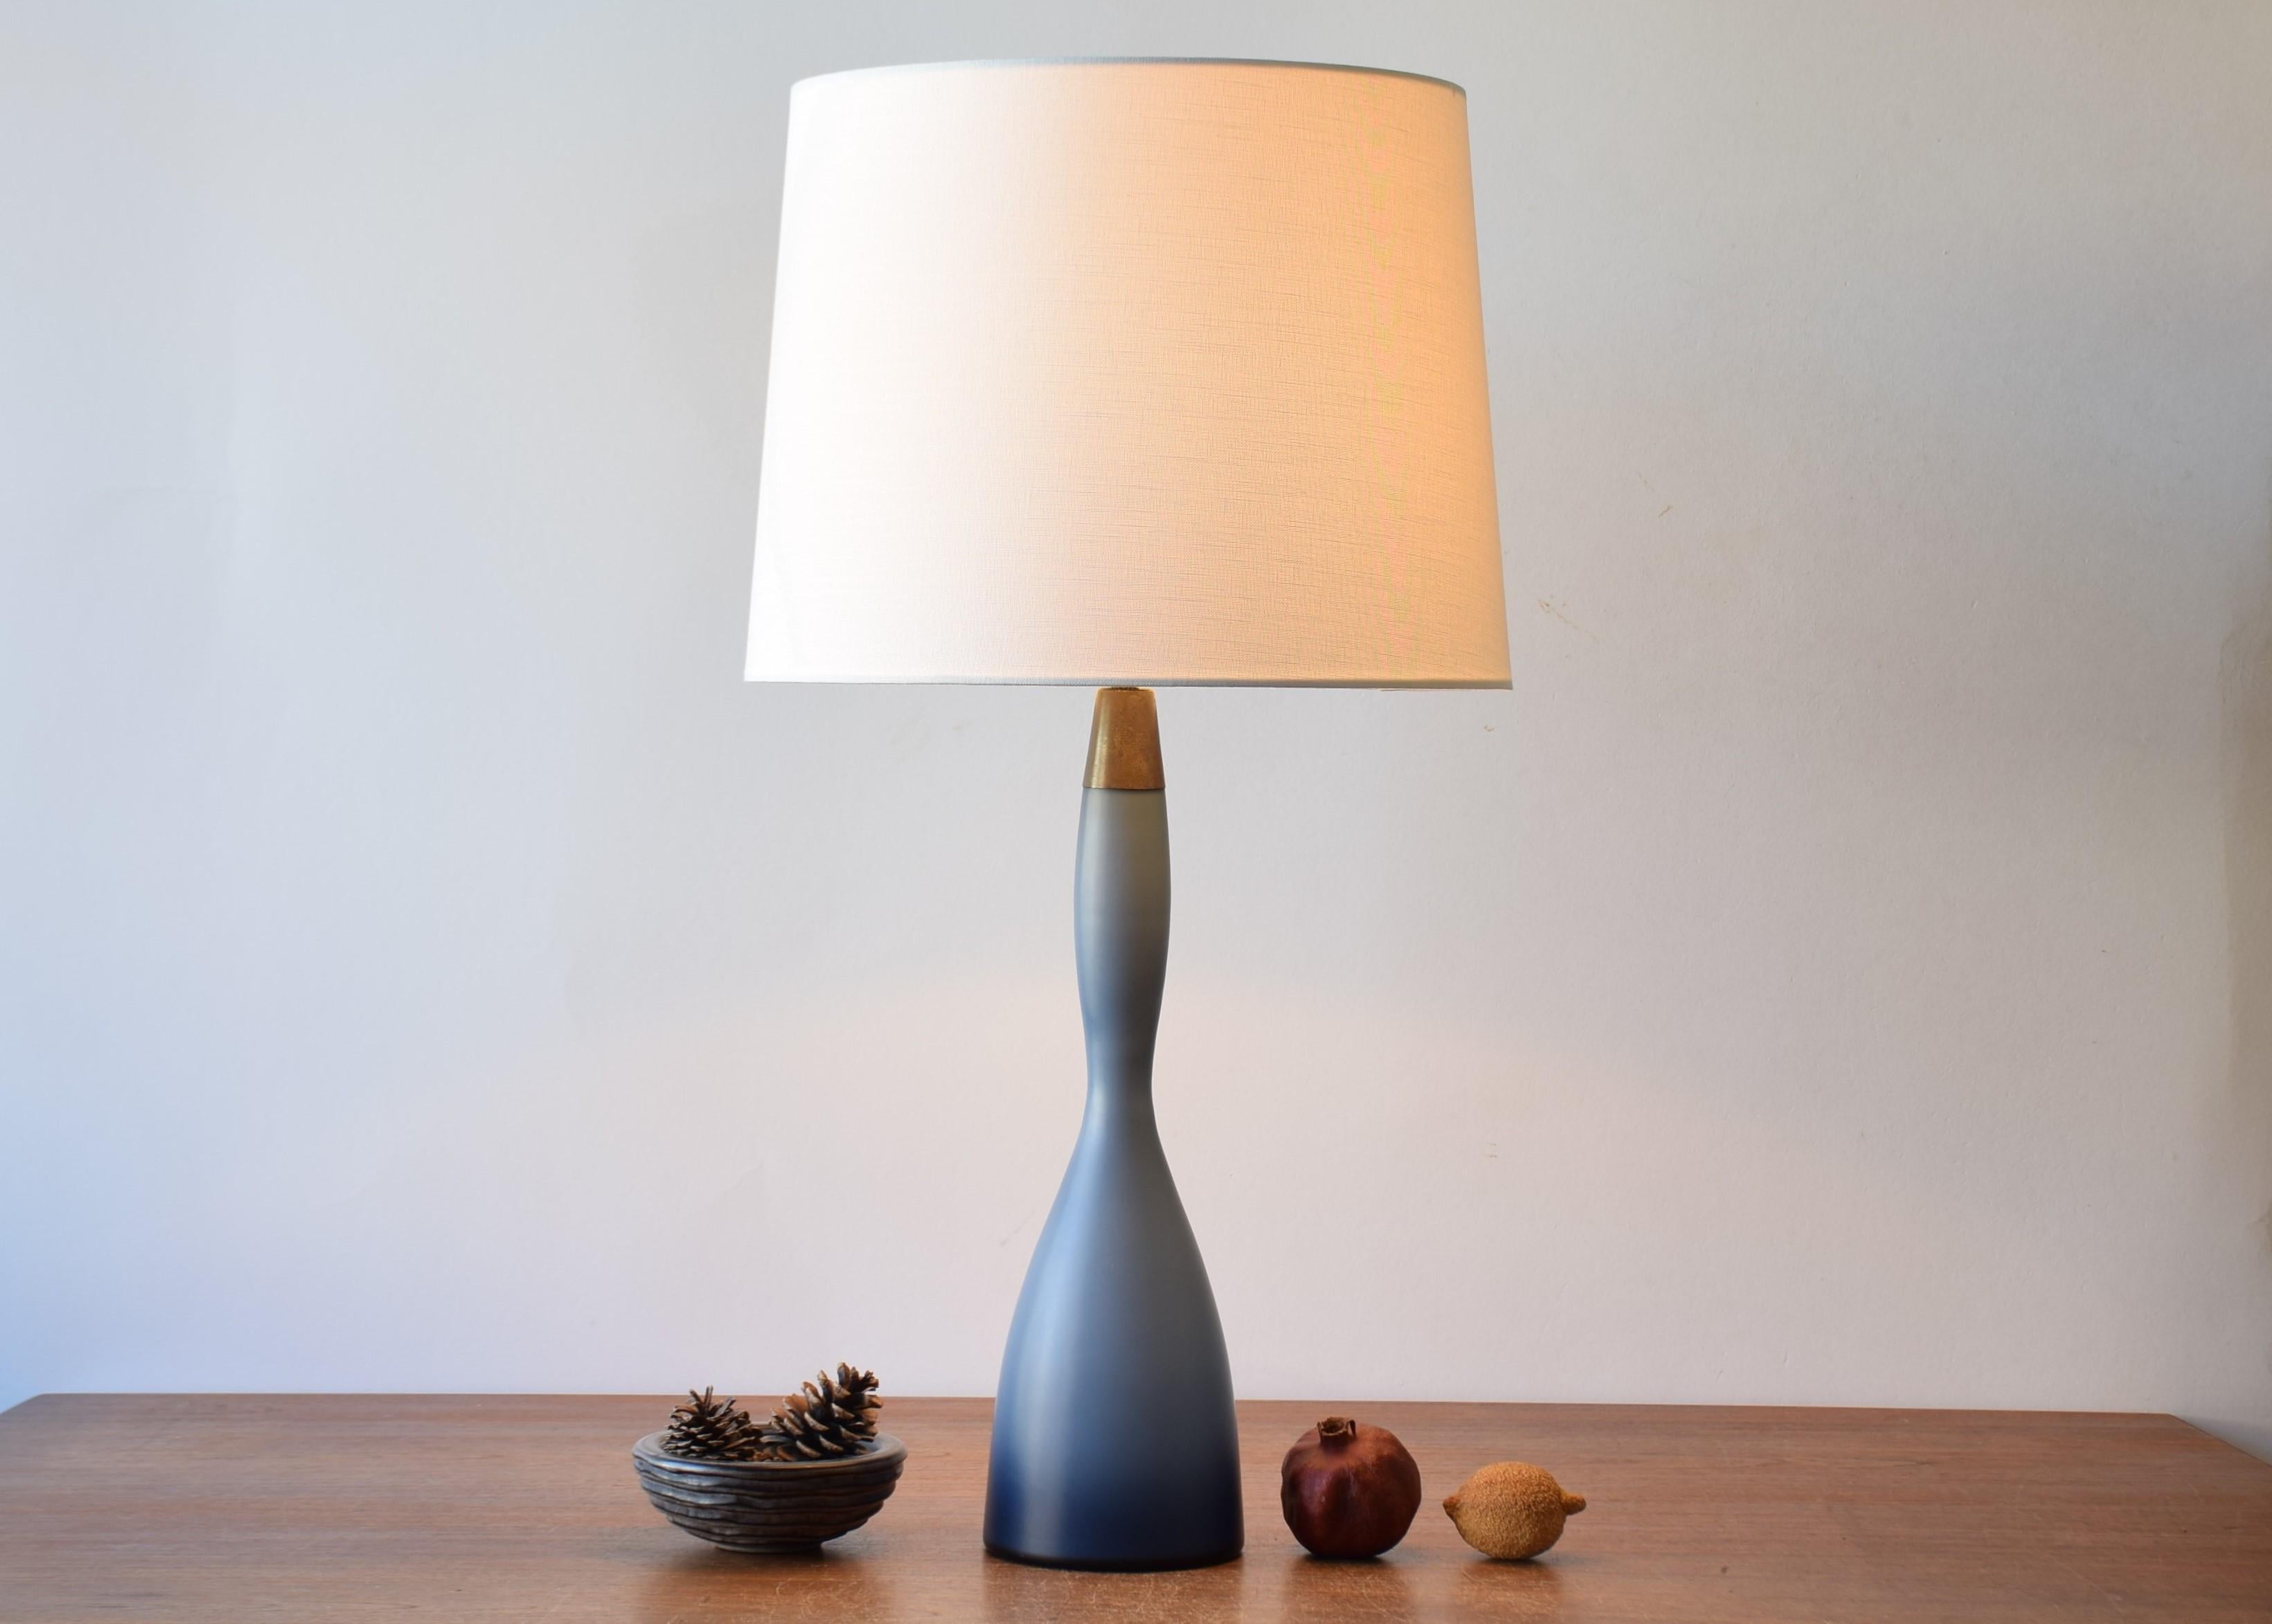 Lampe de table haute, fine et élégante du fabricant danois Kastrup Glasværk (plus tard Holmegaard Glass).
Elle est fabriquée dans un verre dépoli bleu poussière de rêve appelé 